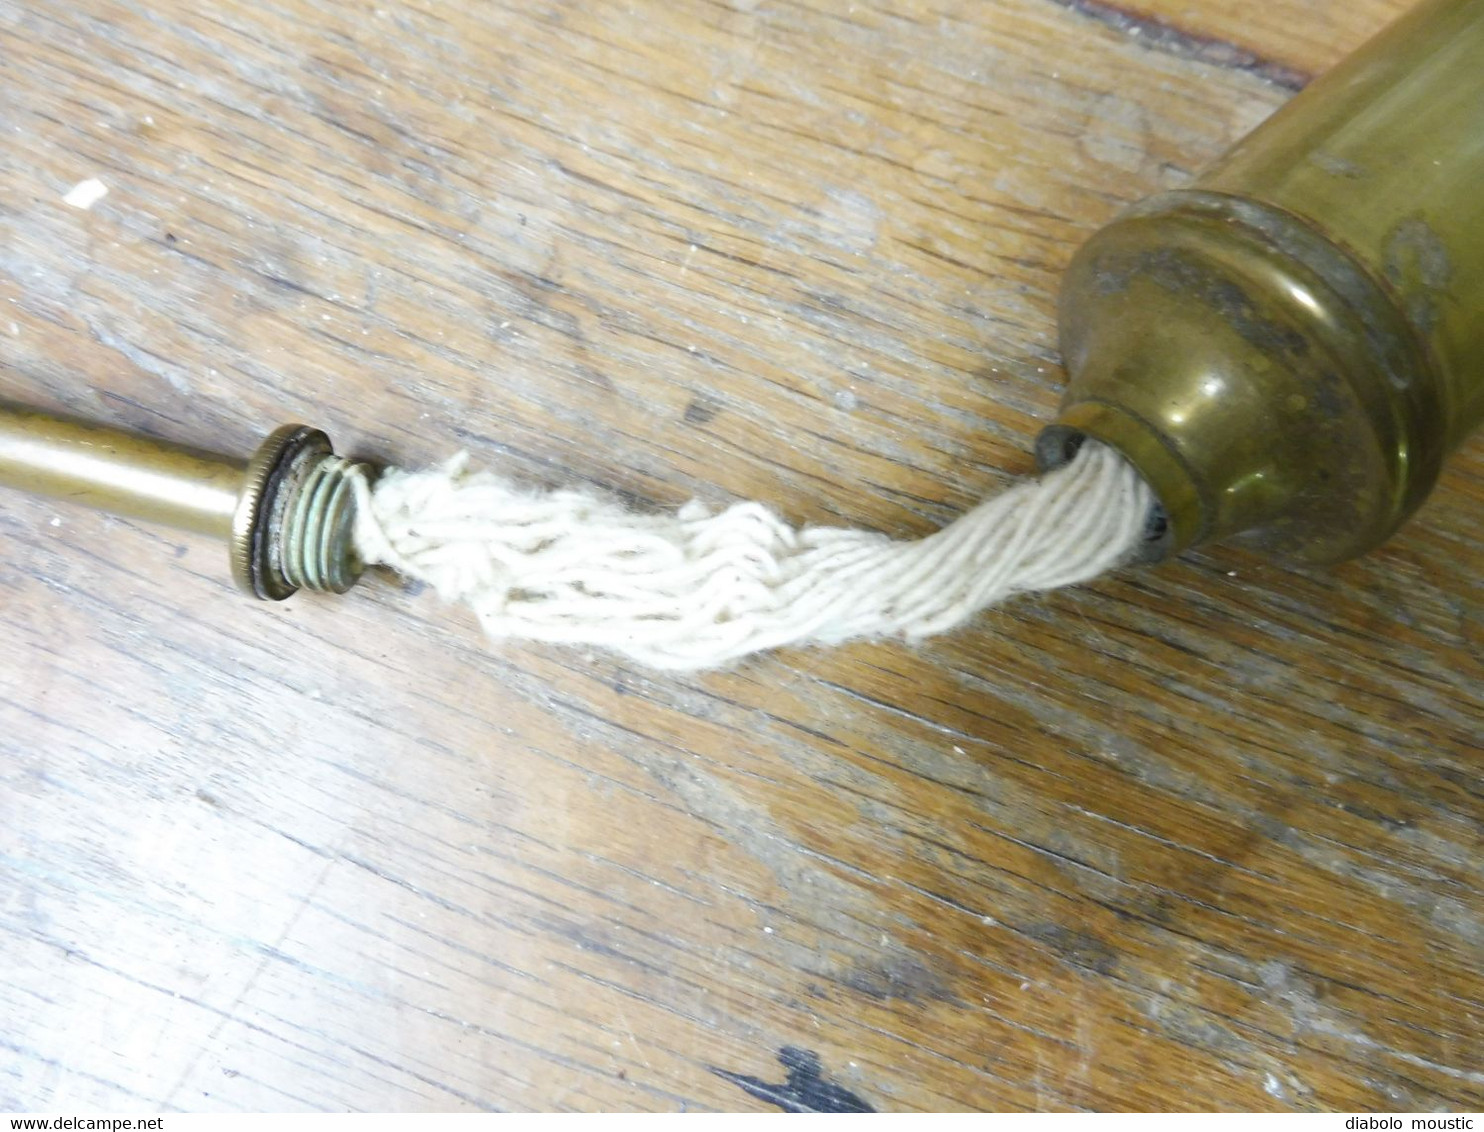 Ancienne lampe, allumoir ou bougie ancienne à essence ou pétrole (Hauteur= 19cm)  (Socle = 4,5cm)